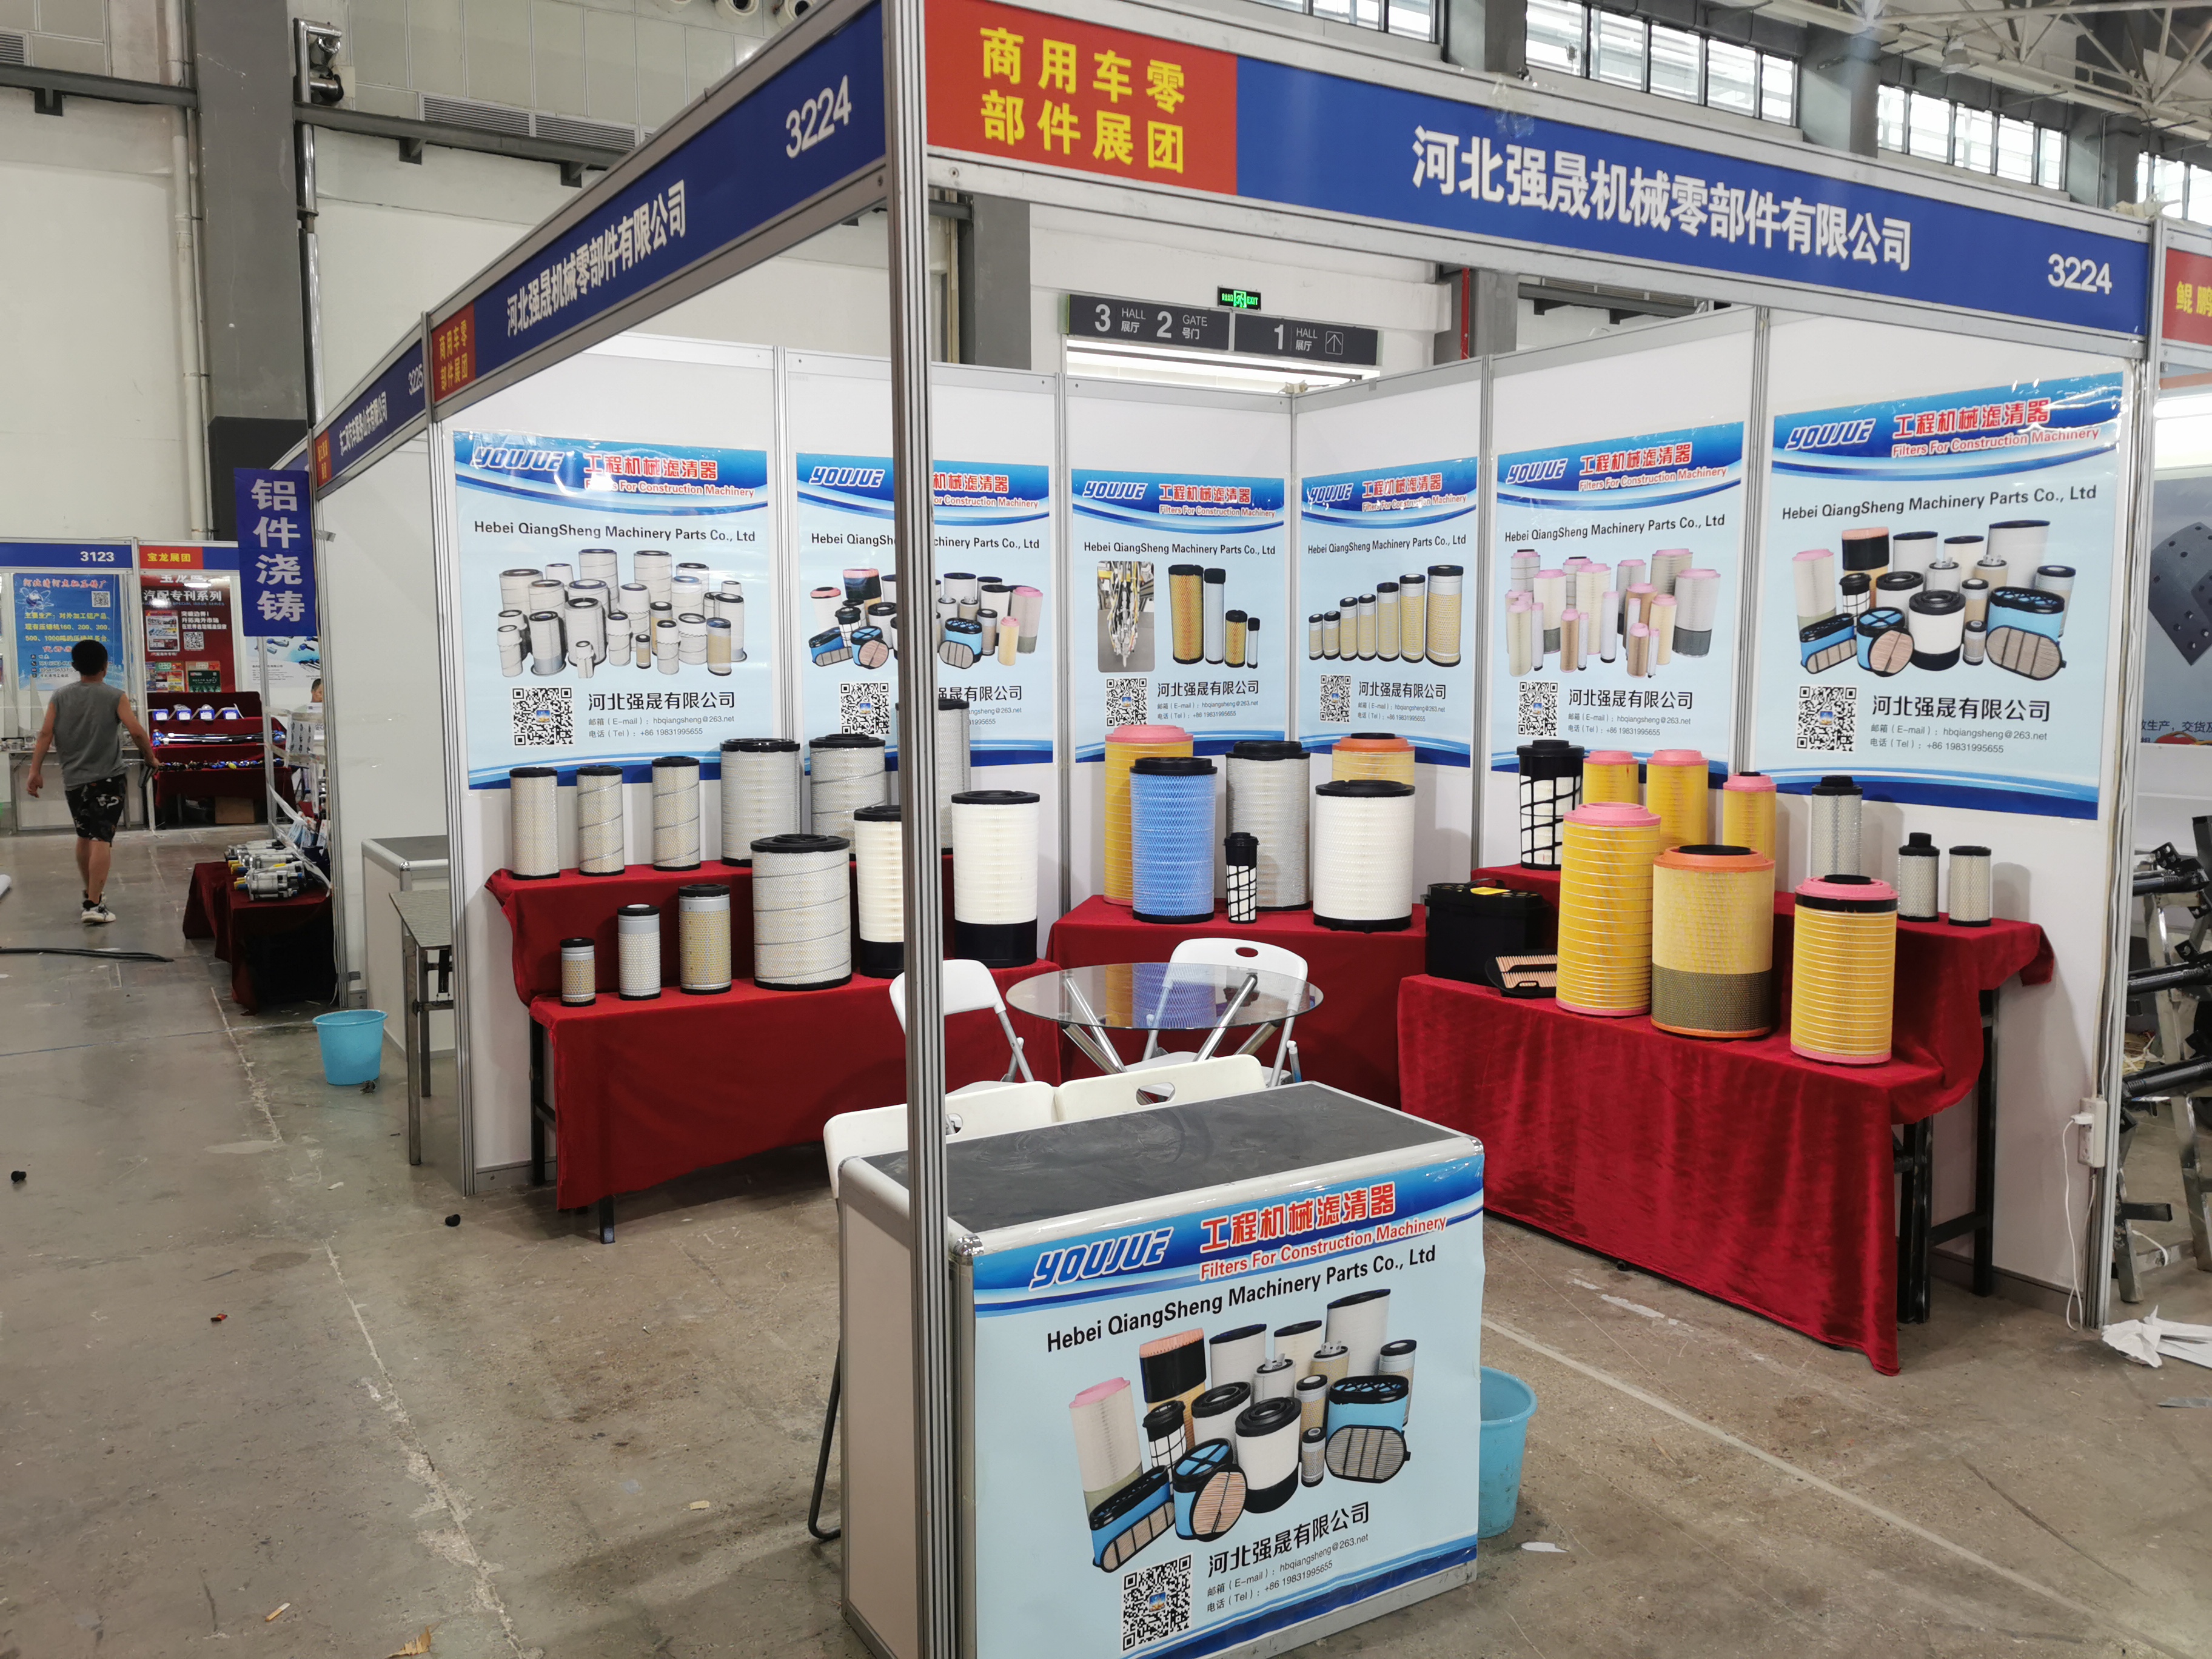 BILDELER KINA: Den 92. China Automobile Parts Fair